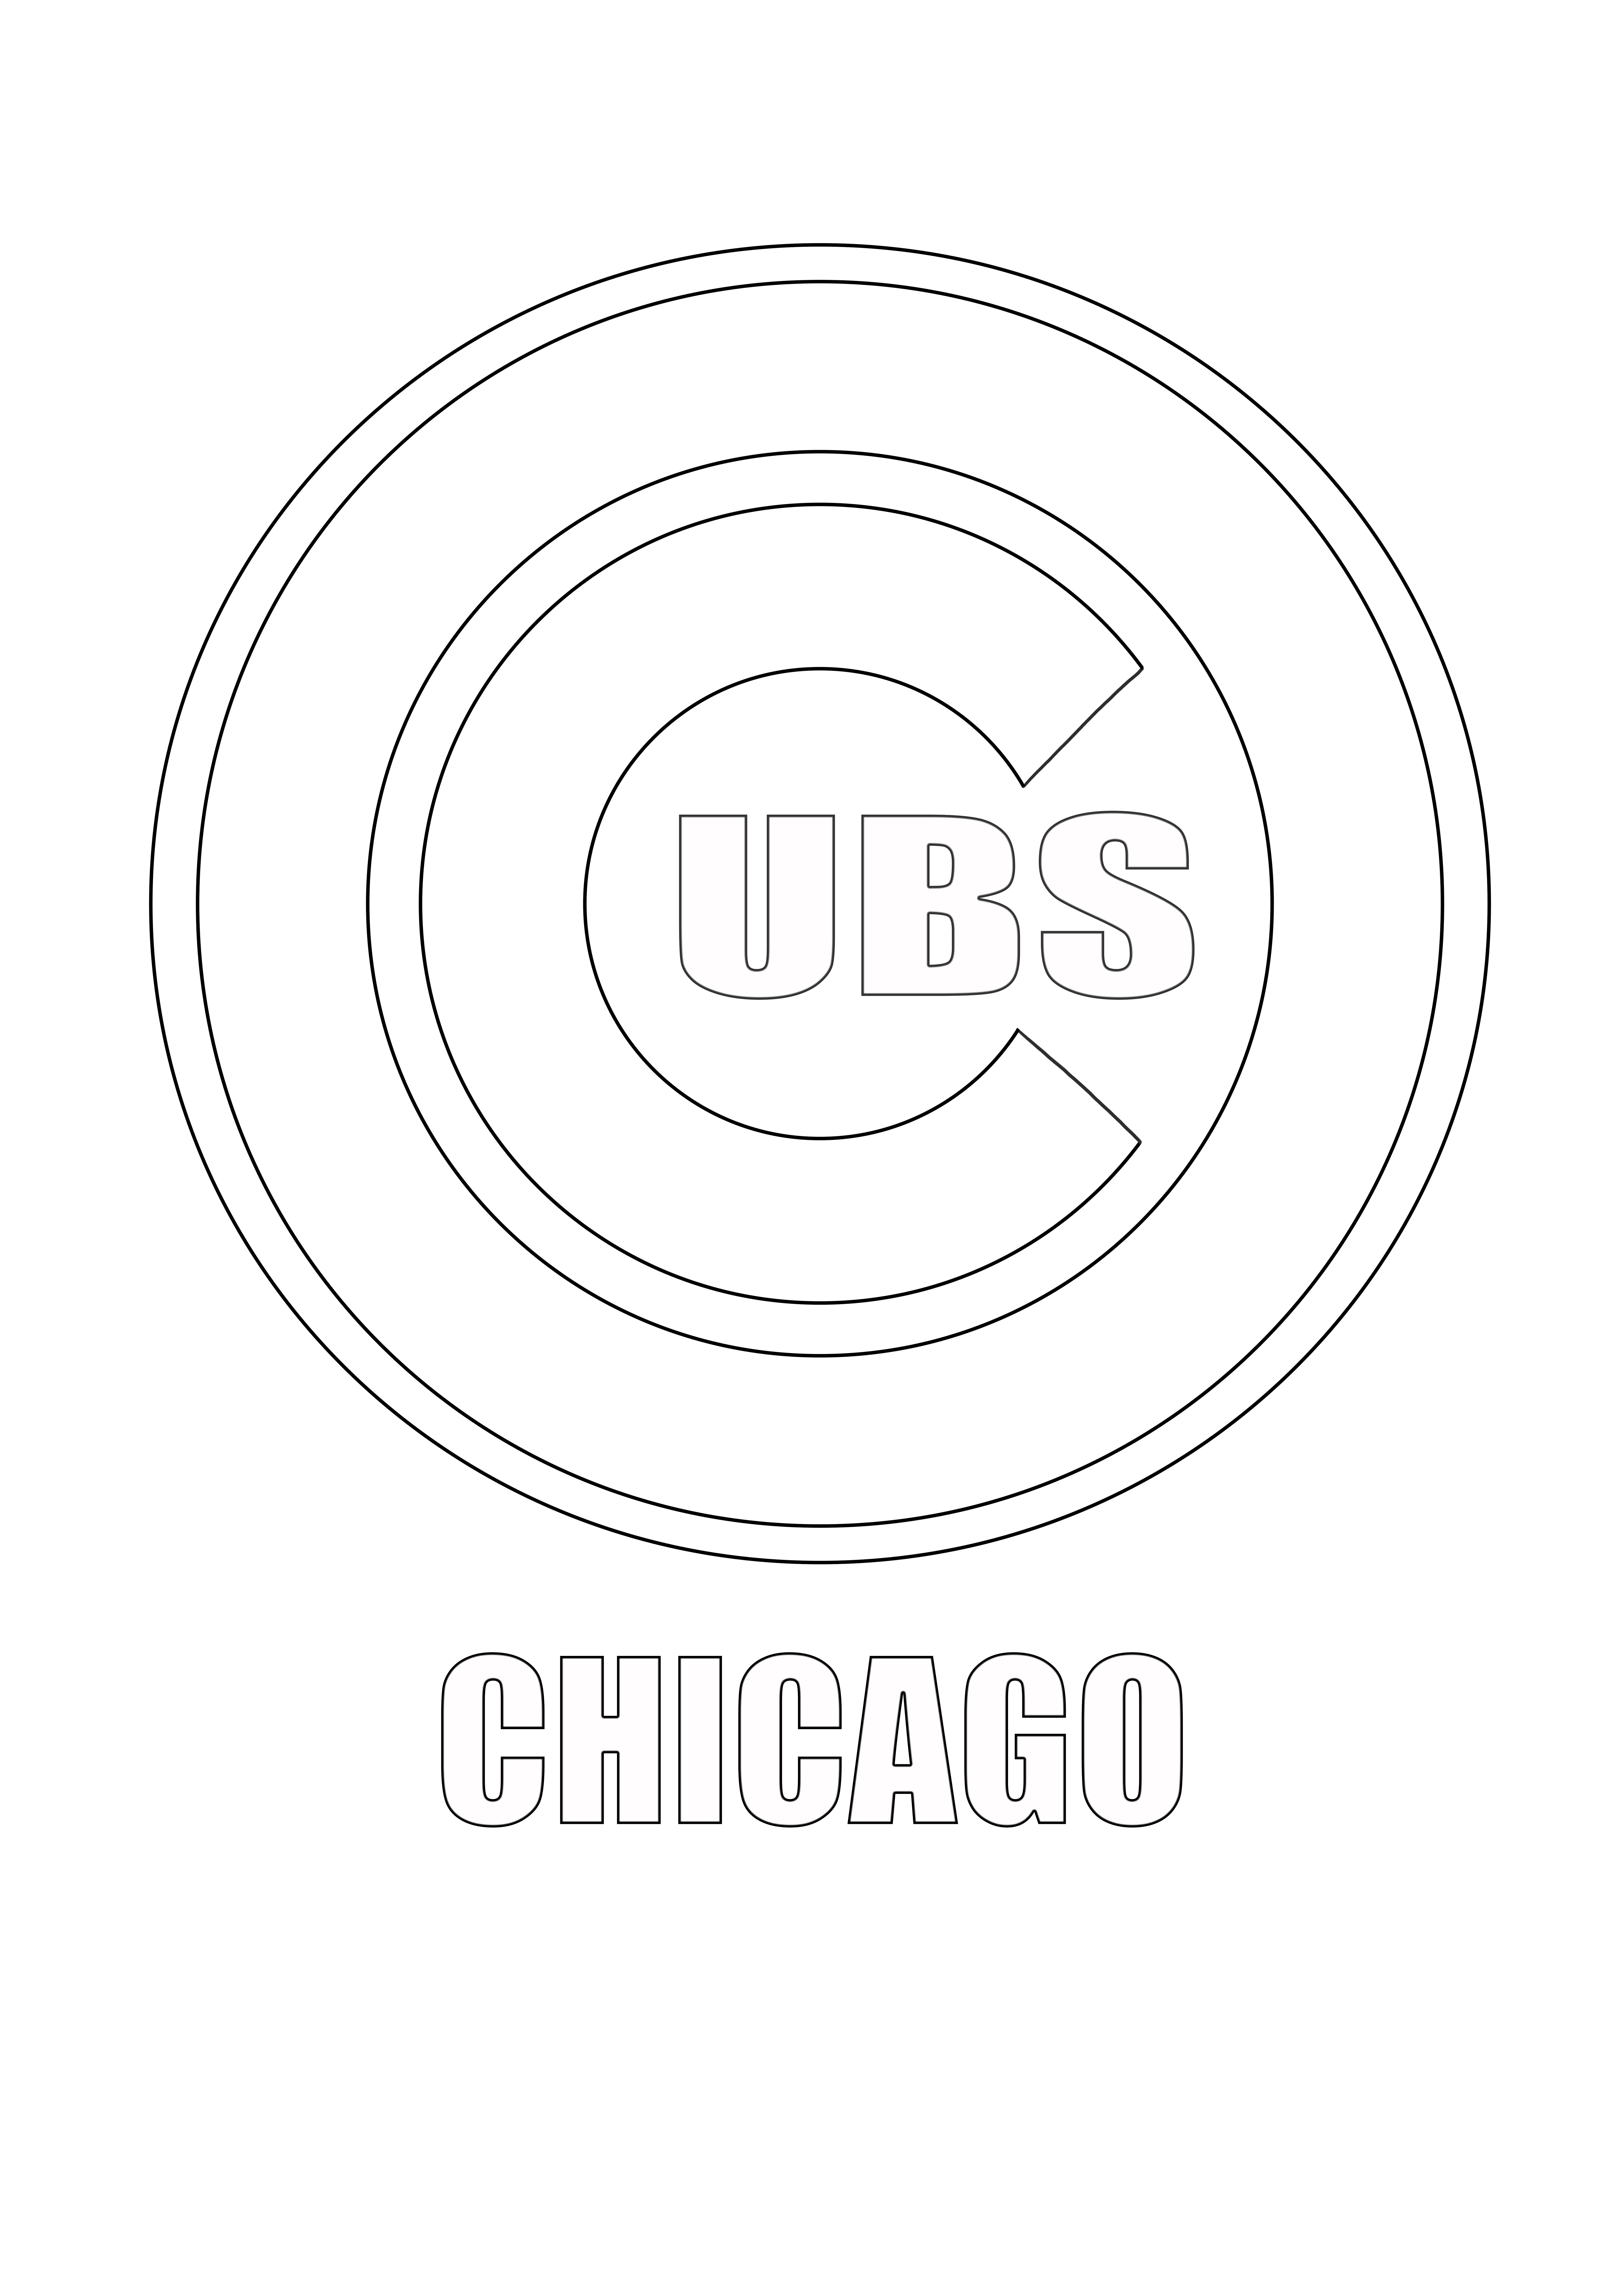 Az MLB-Chicago Cubs logó ingyenesen menthető későbbre vagy letölthető lap